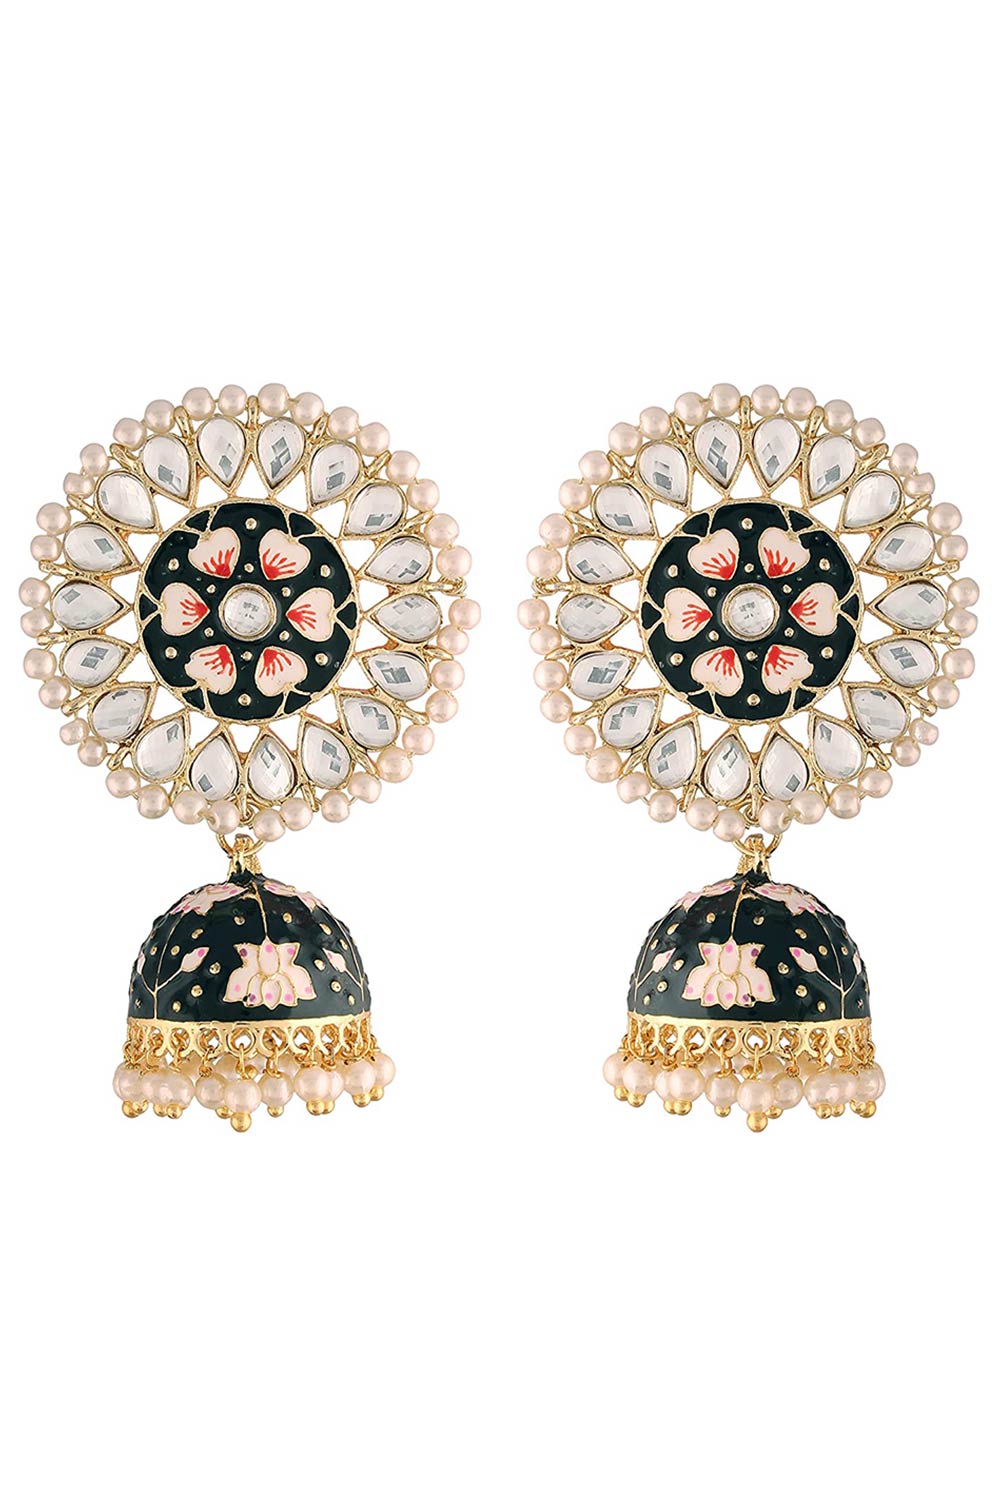 Buy Women's Alloy Jhumka Earring in Black - Online